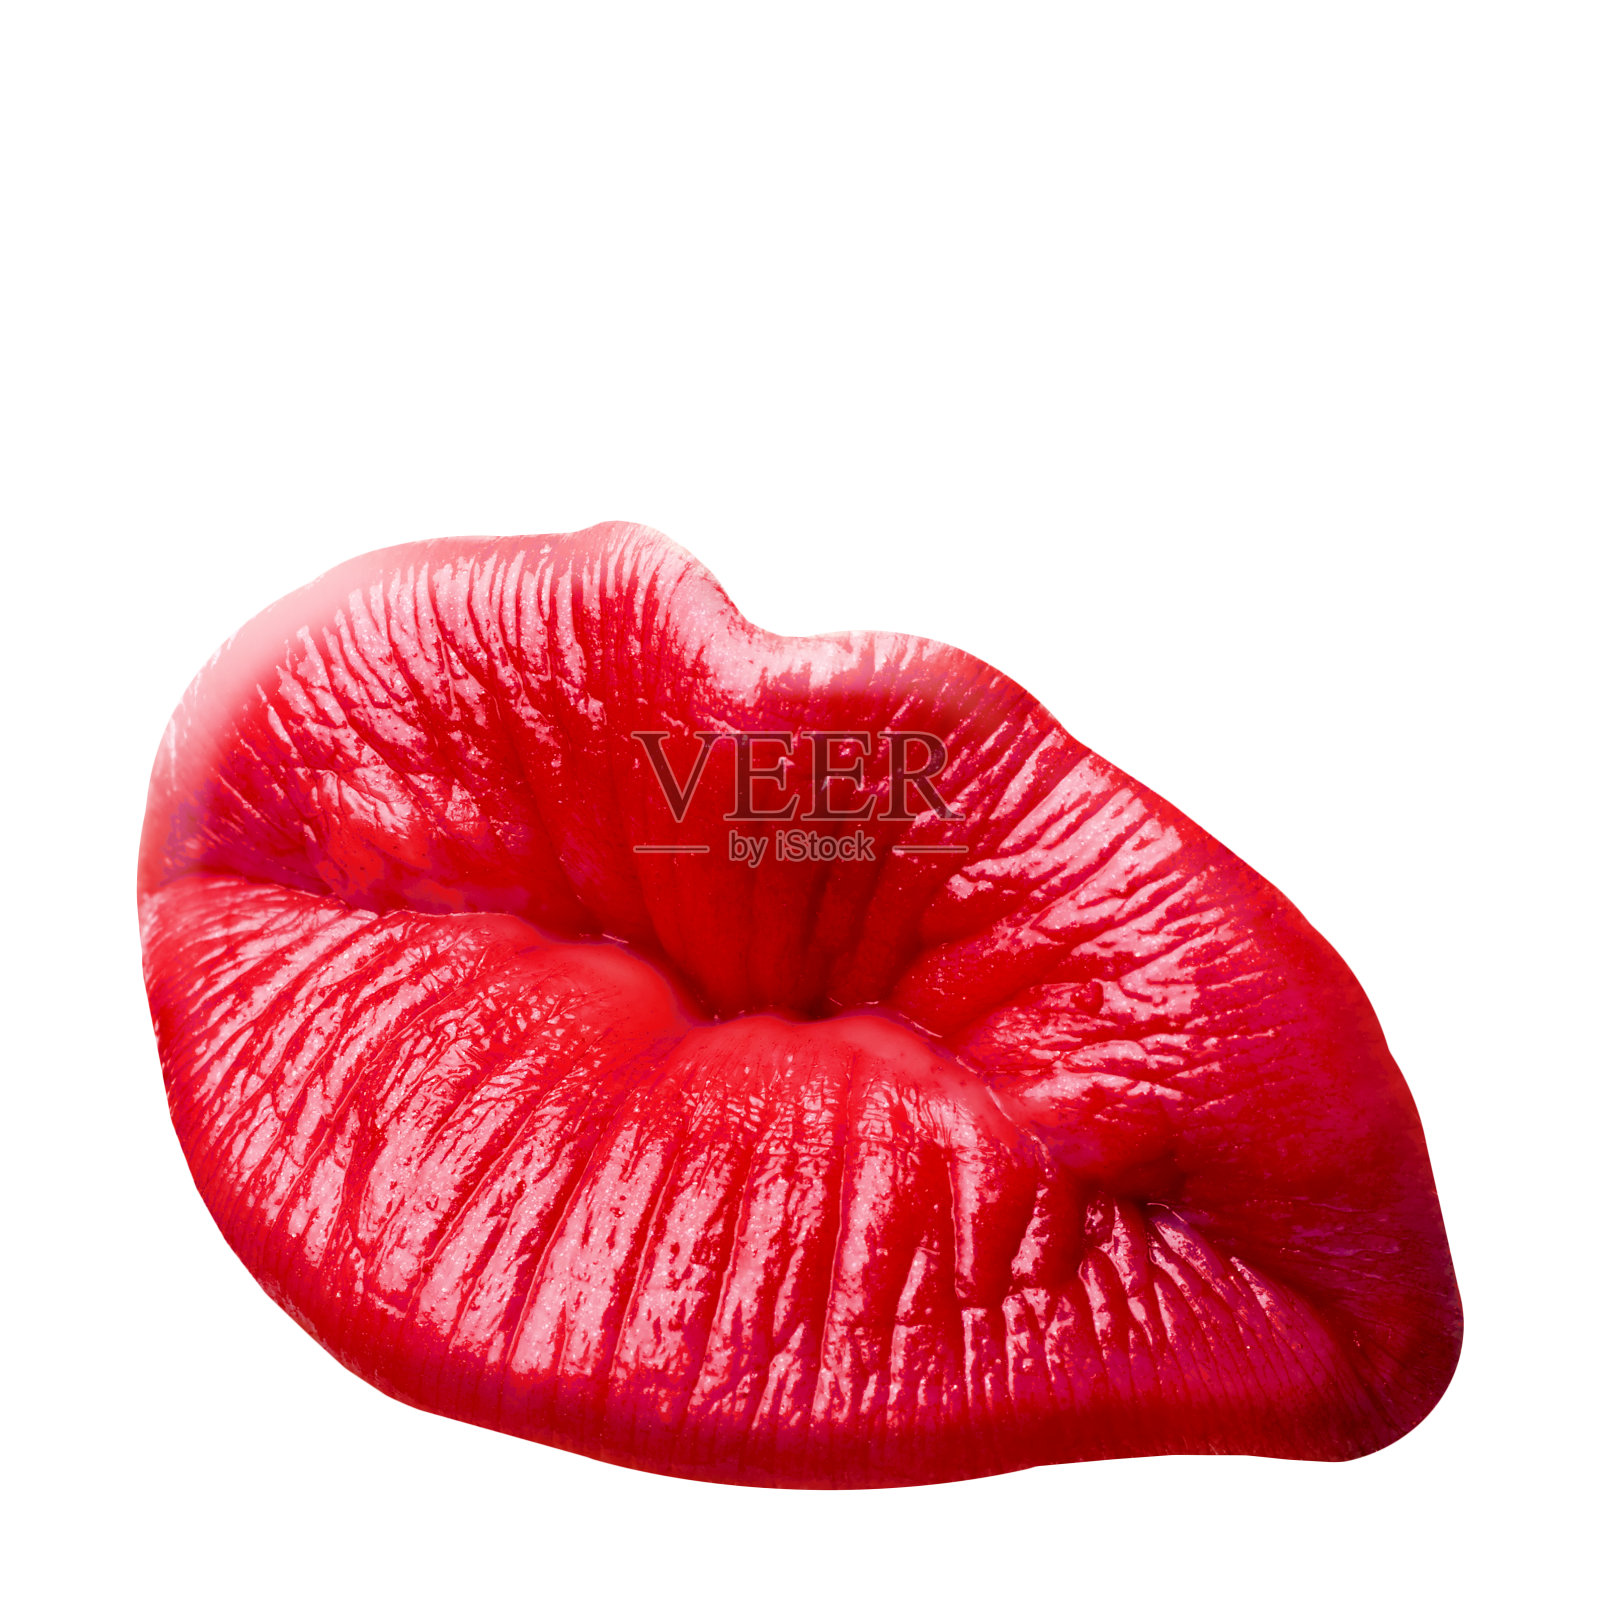 性感的接吻女人的嘴唇与红色的口红孤立的白色背景。图标与文字和复古的框架贺卡设计。美丽的近距离接吻照片。照片摄影图片